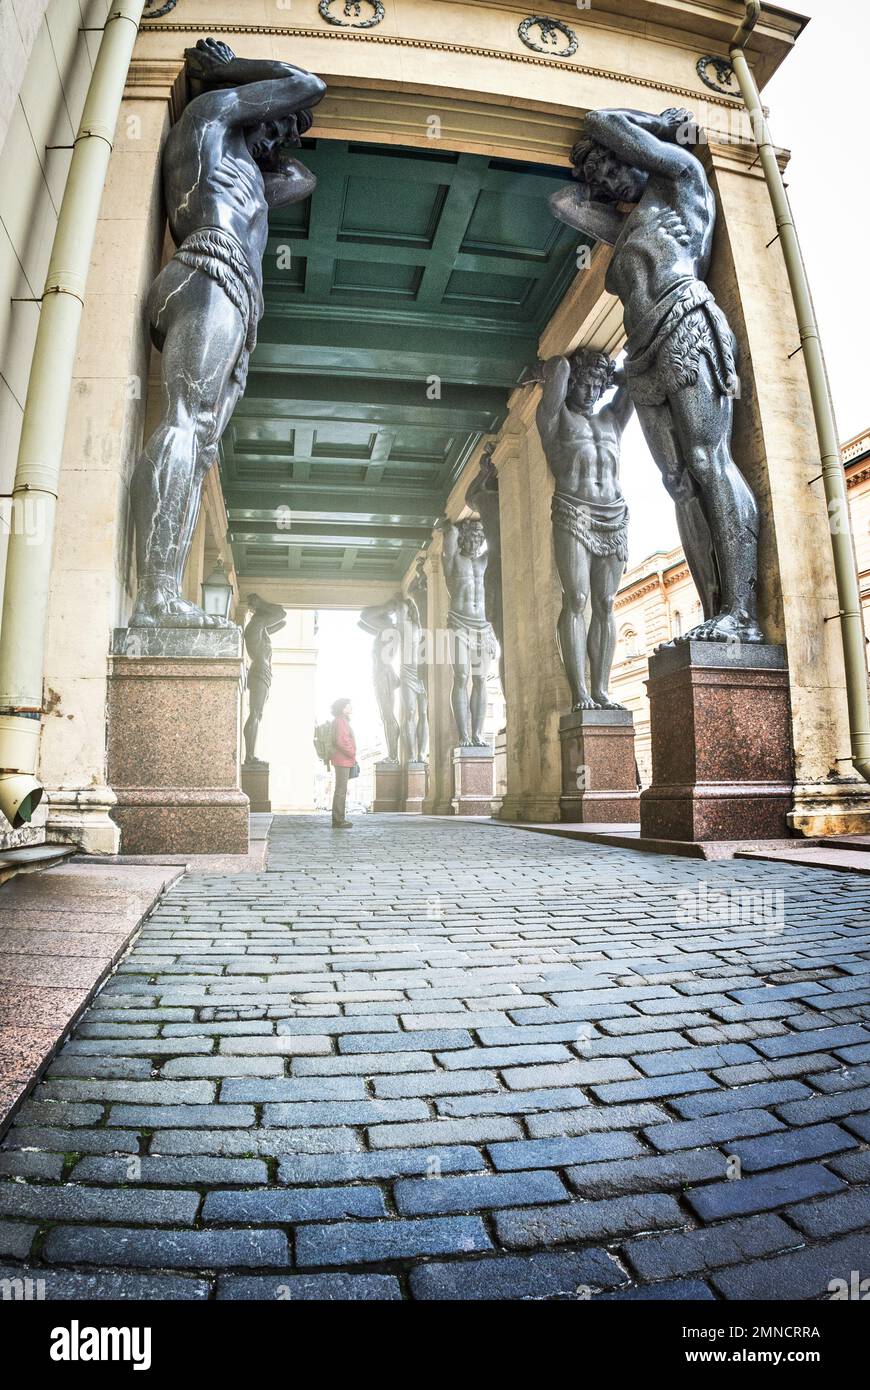 St. Saint-Pétersbourg, Russie - 29 mai 2017 : le portique de la Nouvelle Ermitage est décoré par le sculpteur A. I. de 10 figures des Atlantides Terebenev Banque D'Images